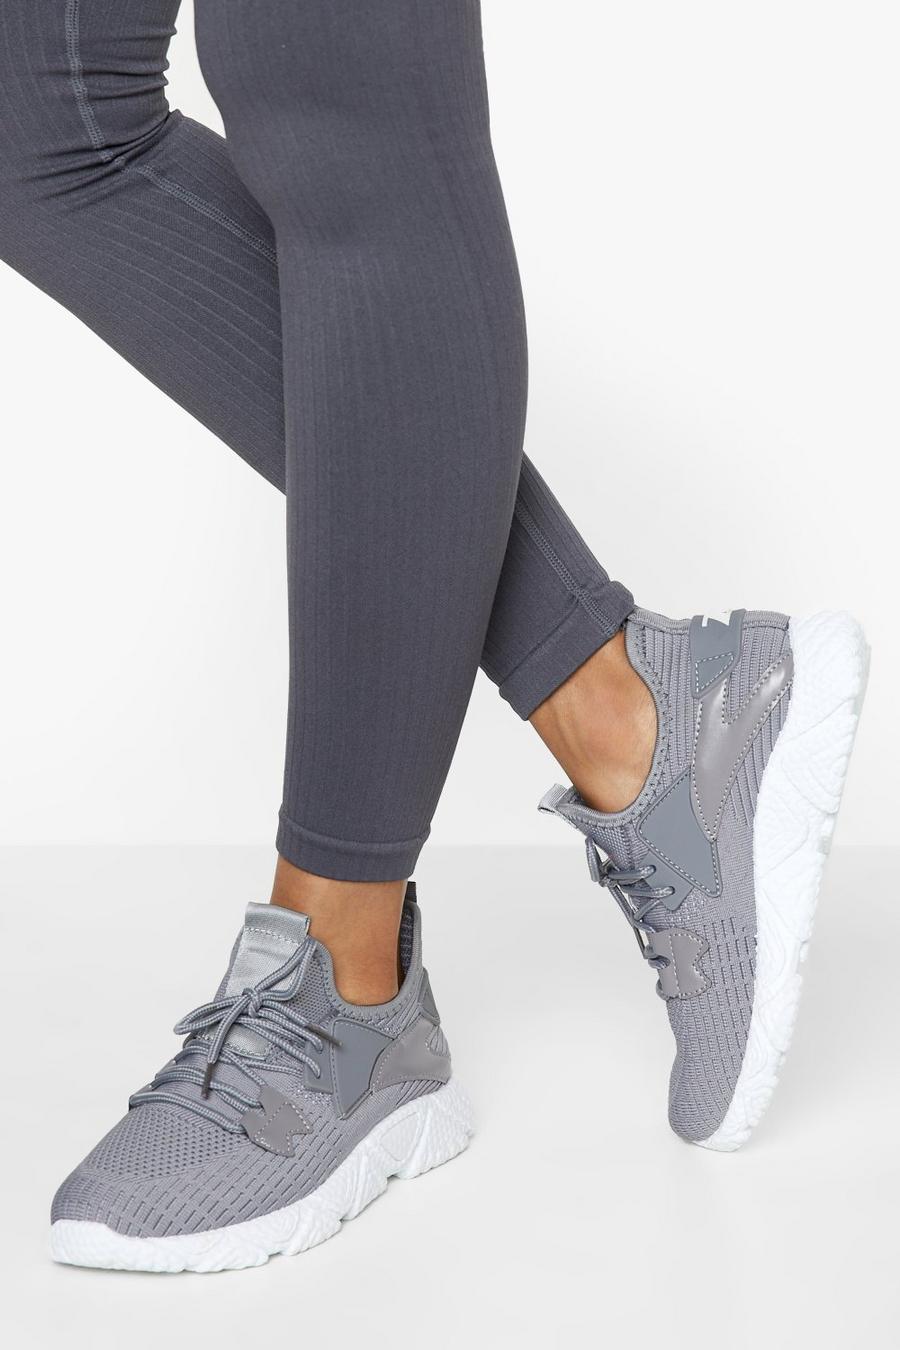 Zapatillas deportivas calcetín de tela, Grey gris